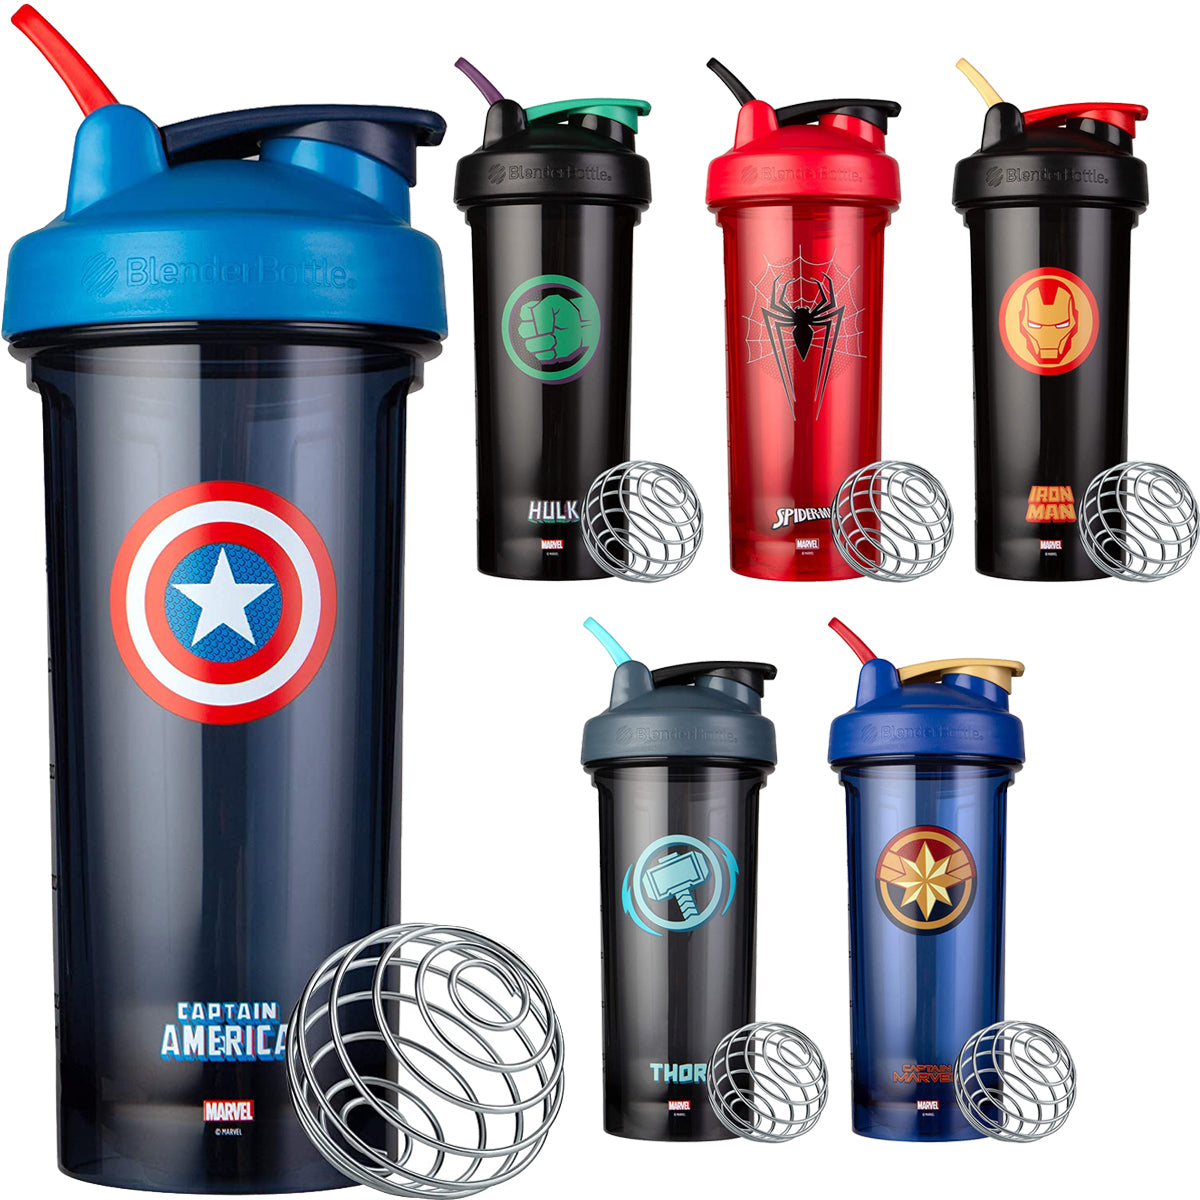 Blender Bottle Marvel Pro Series 28 oz. Shaker Mixer Cup with Loop Top Blender Bottle